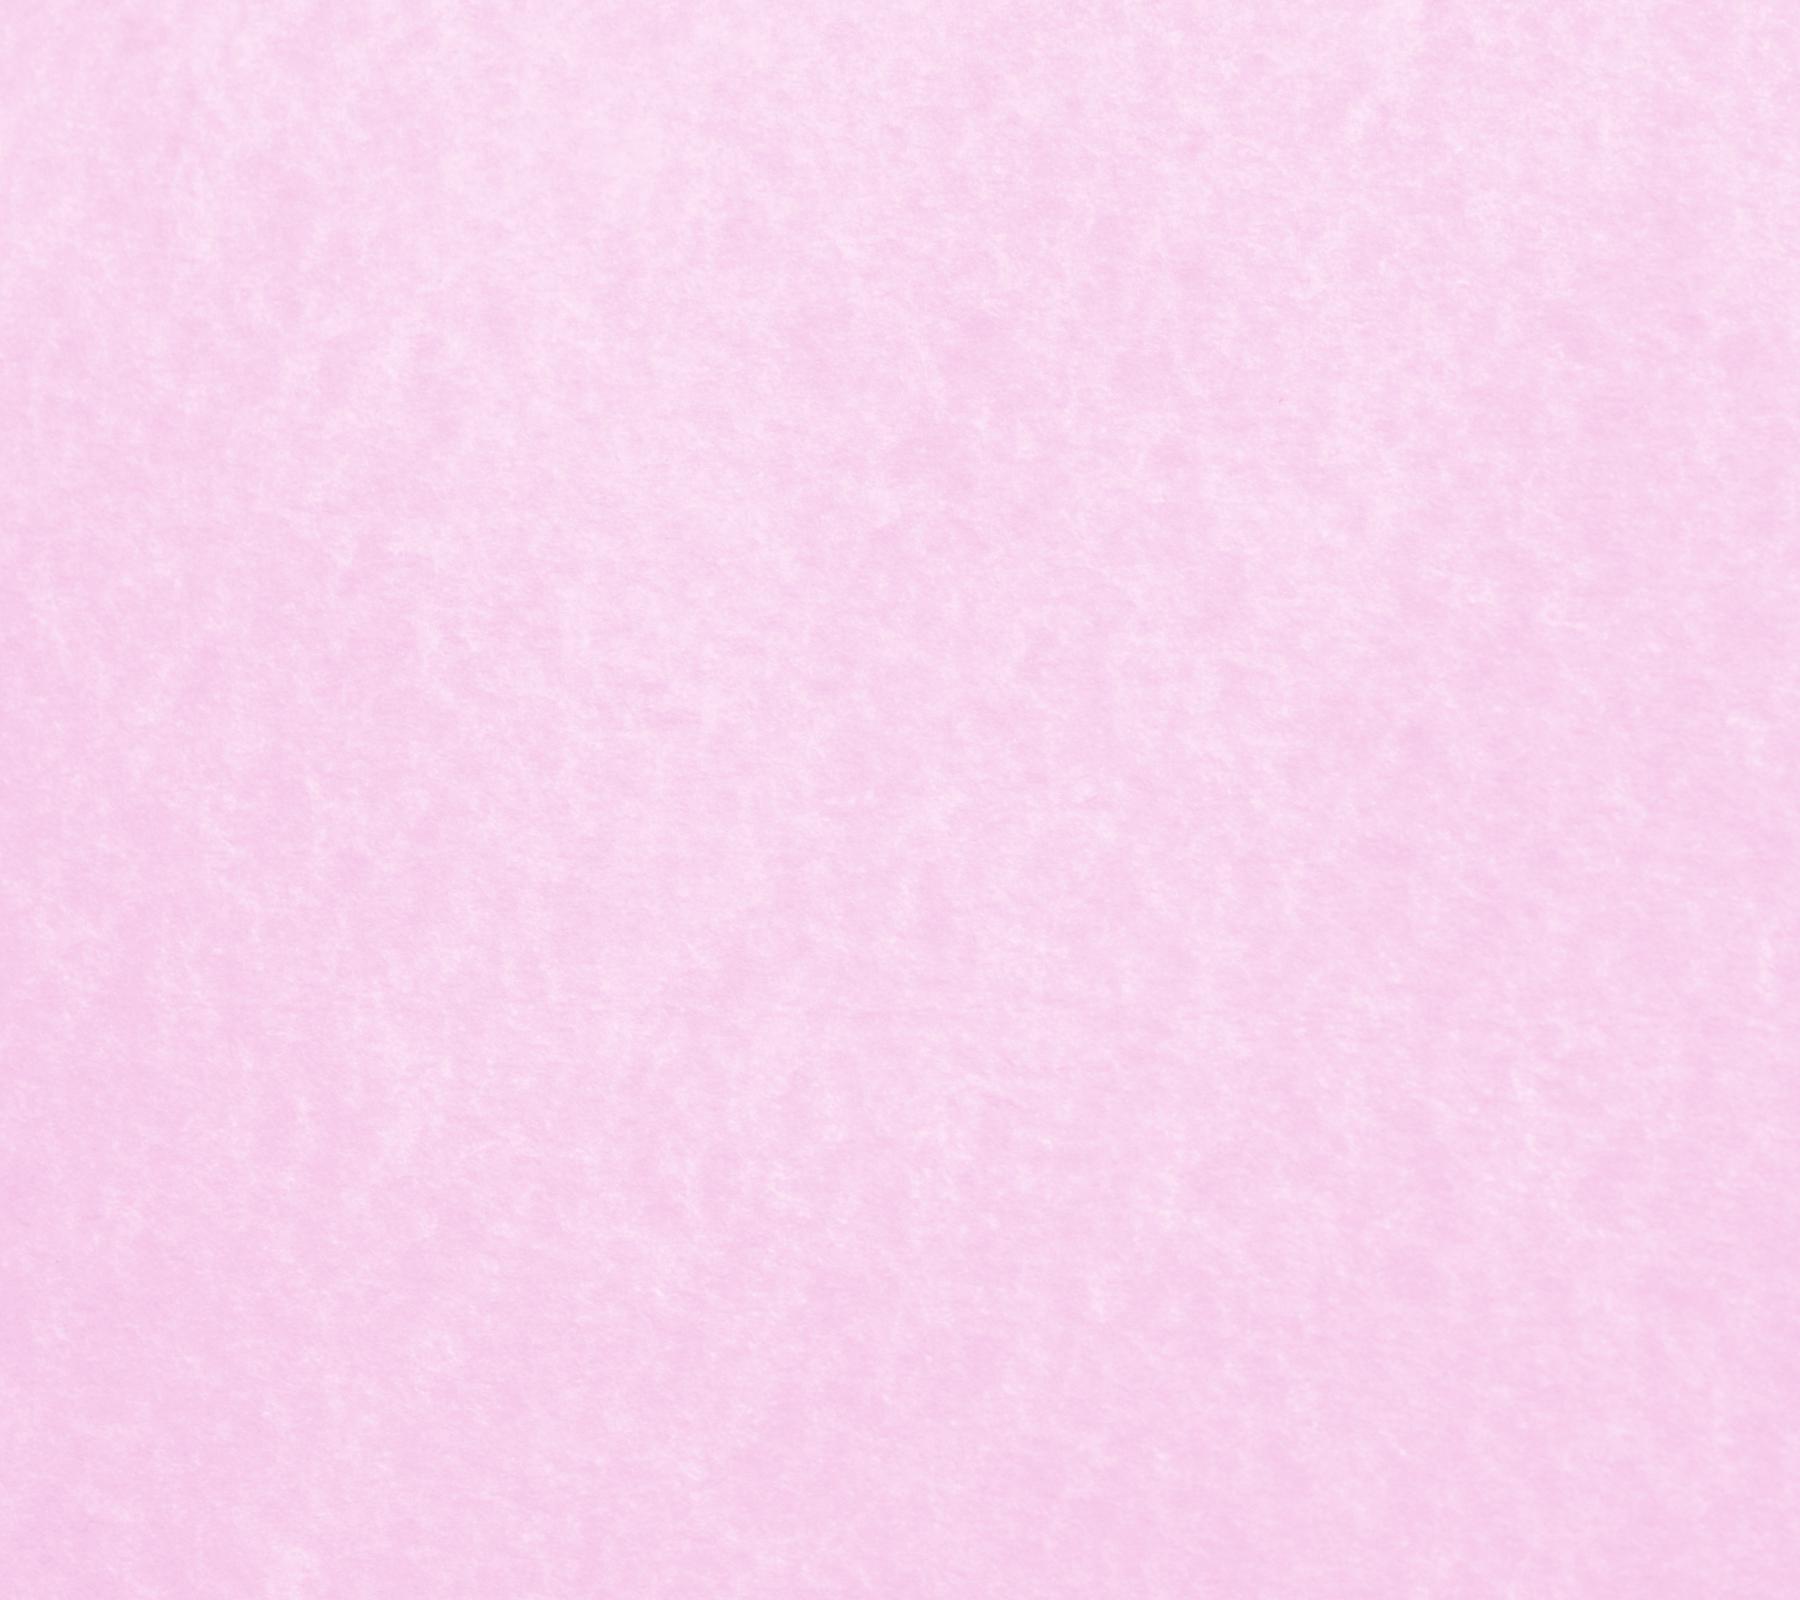 Как пишется бледно розовый. Нежно розовый цвет. Нежный розовый цвет. Бледно-розовый цвет. Розовый цвет однотонный нежный.